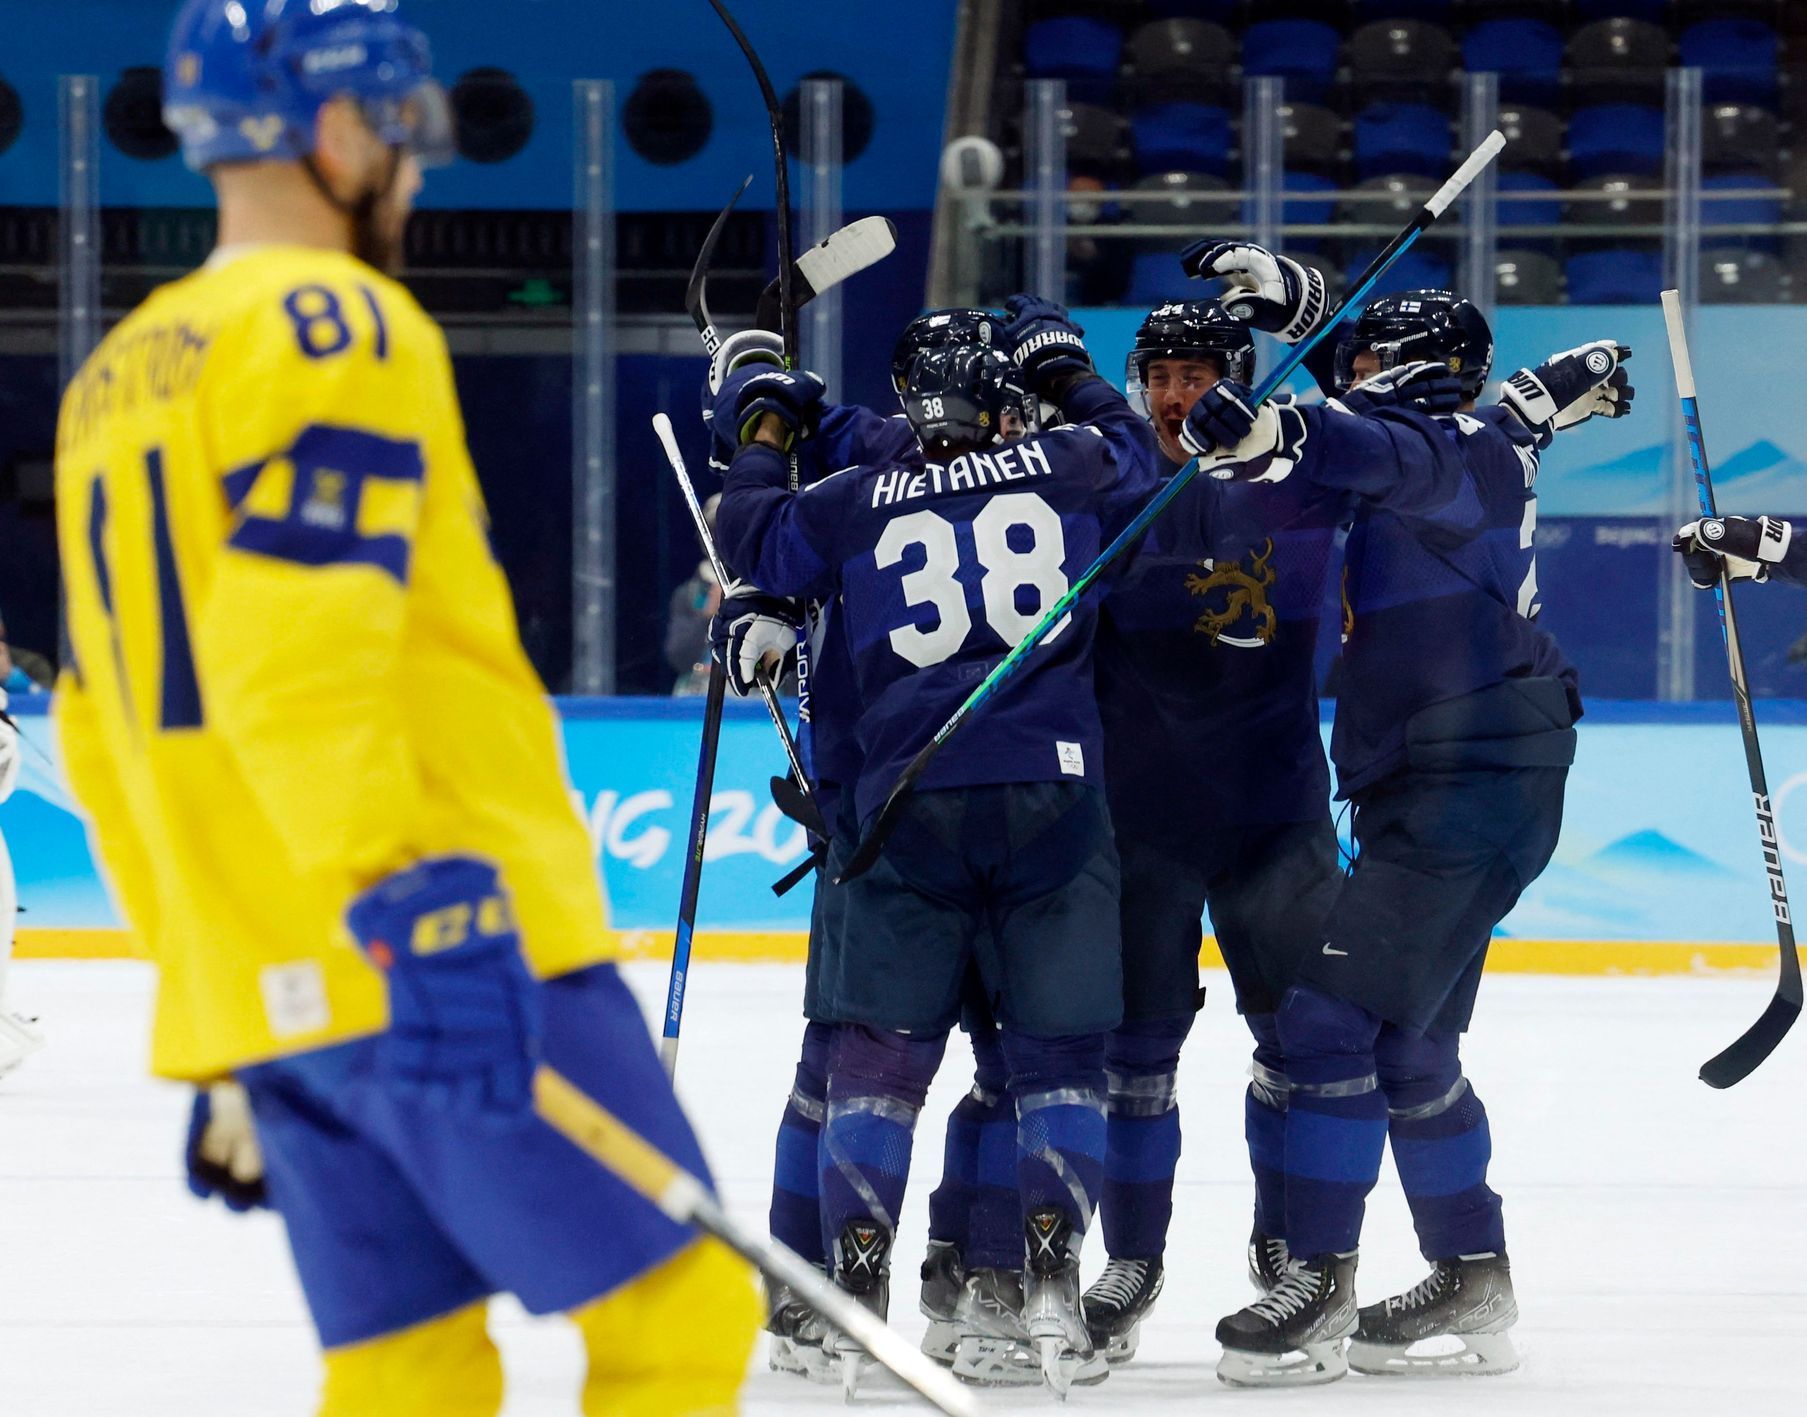 Finská radost po vítězné brance do sítě Švédska na ZOH 2022.